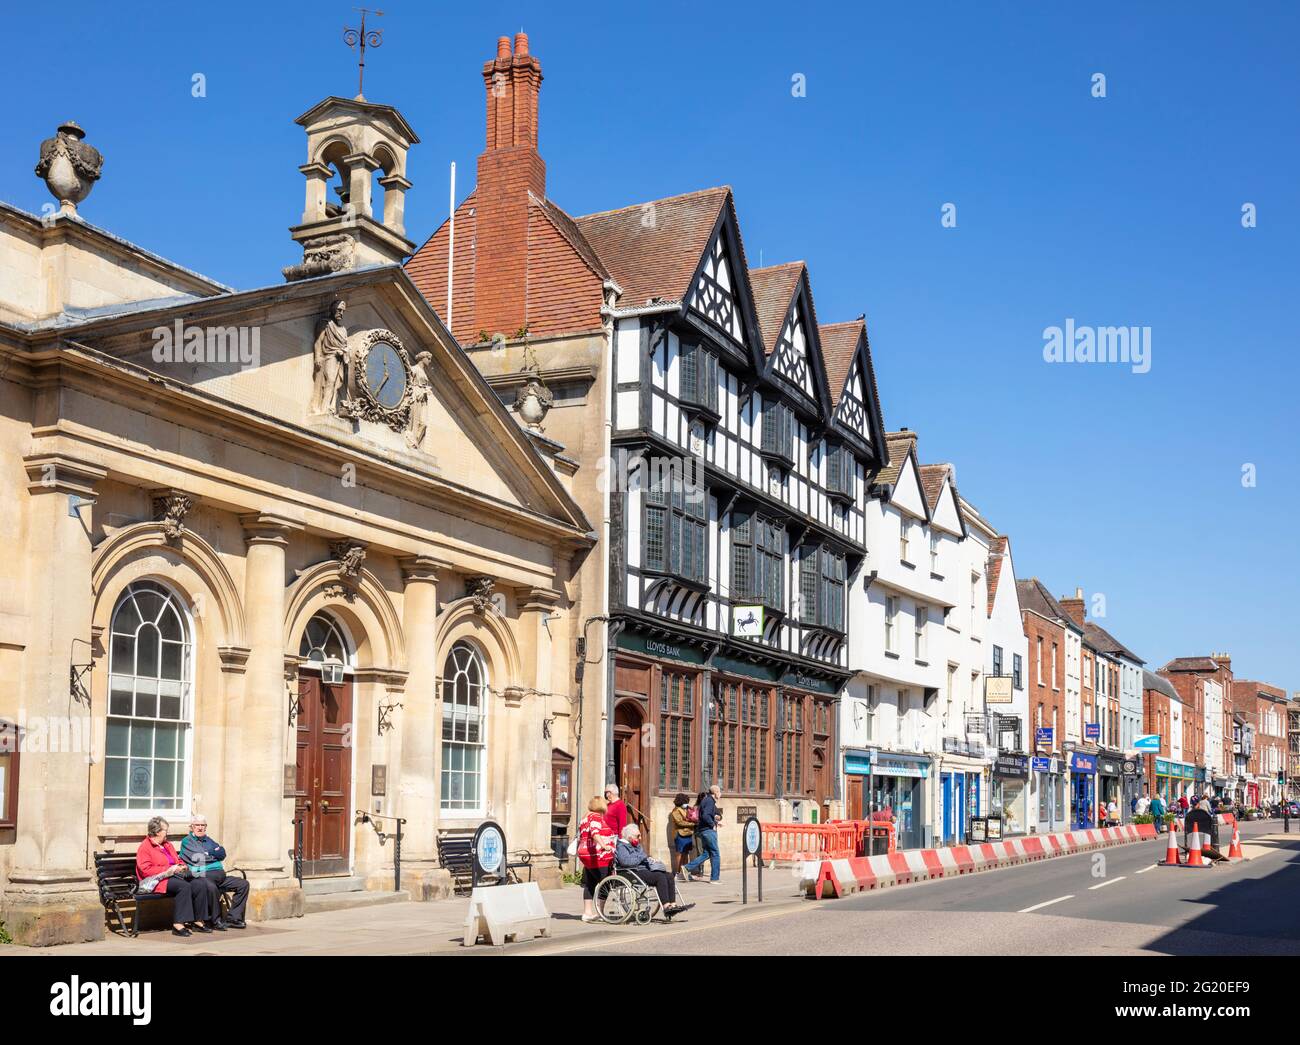 Hôtel de ville de Tewkesbury sur la High Street avec des magasins du centre-ville et des bâtiments médiévaux Tewkesbury, Gloucestershire, Angleterre, GB, Royaume-Uni, Europe Banque D'Images